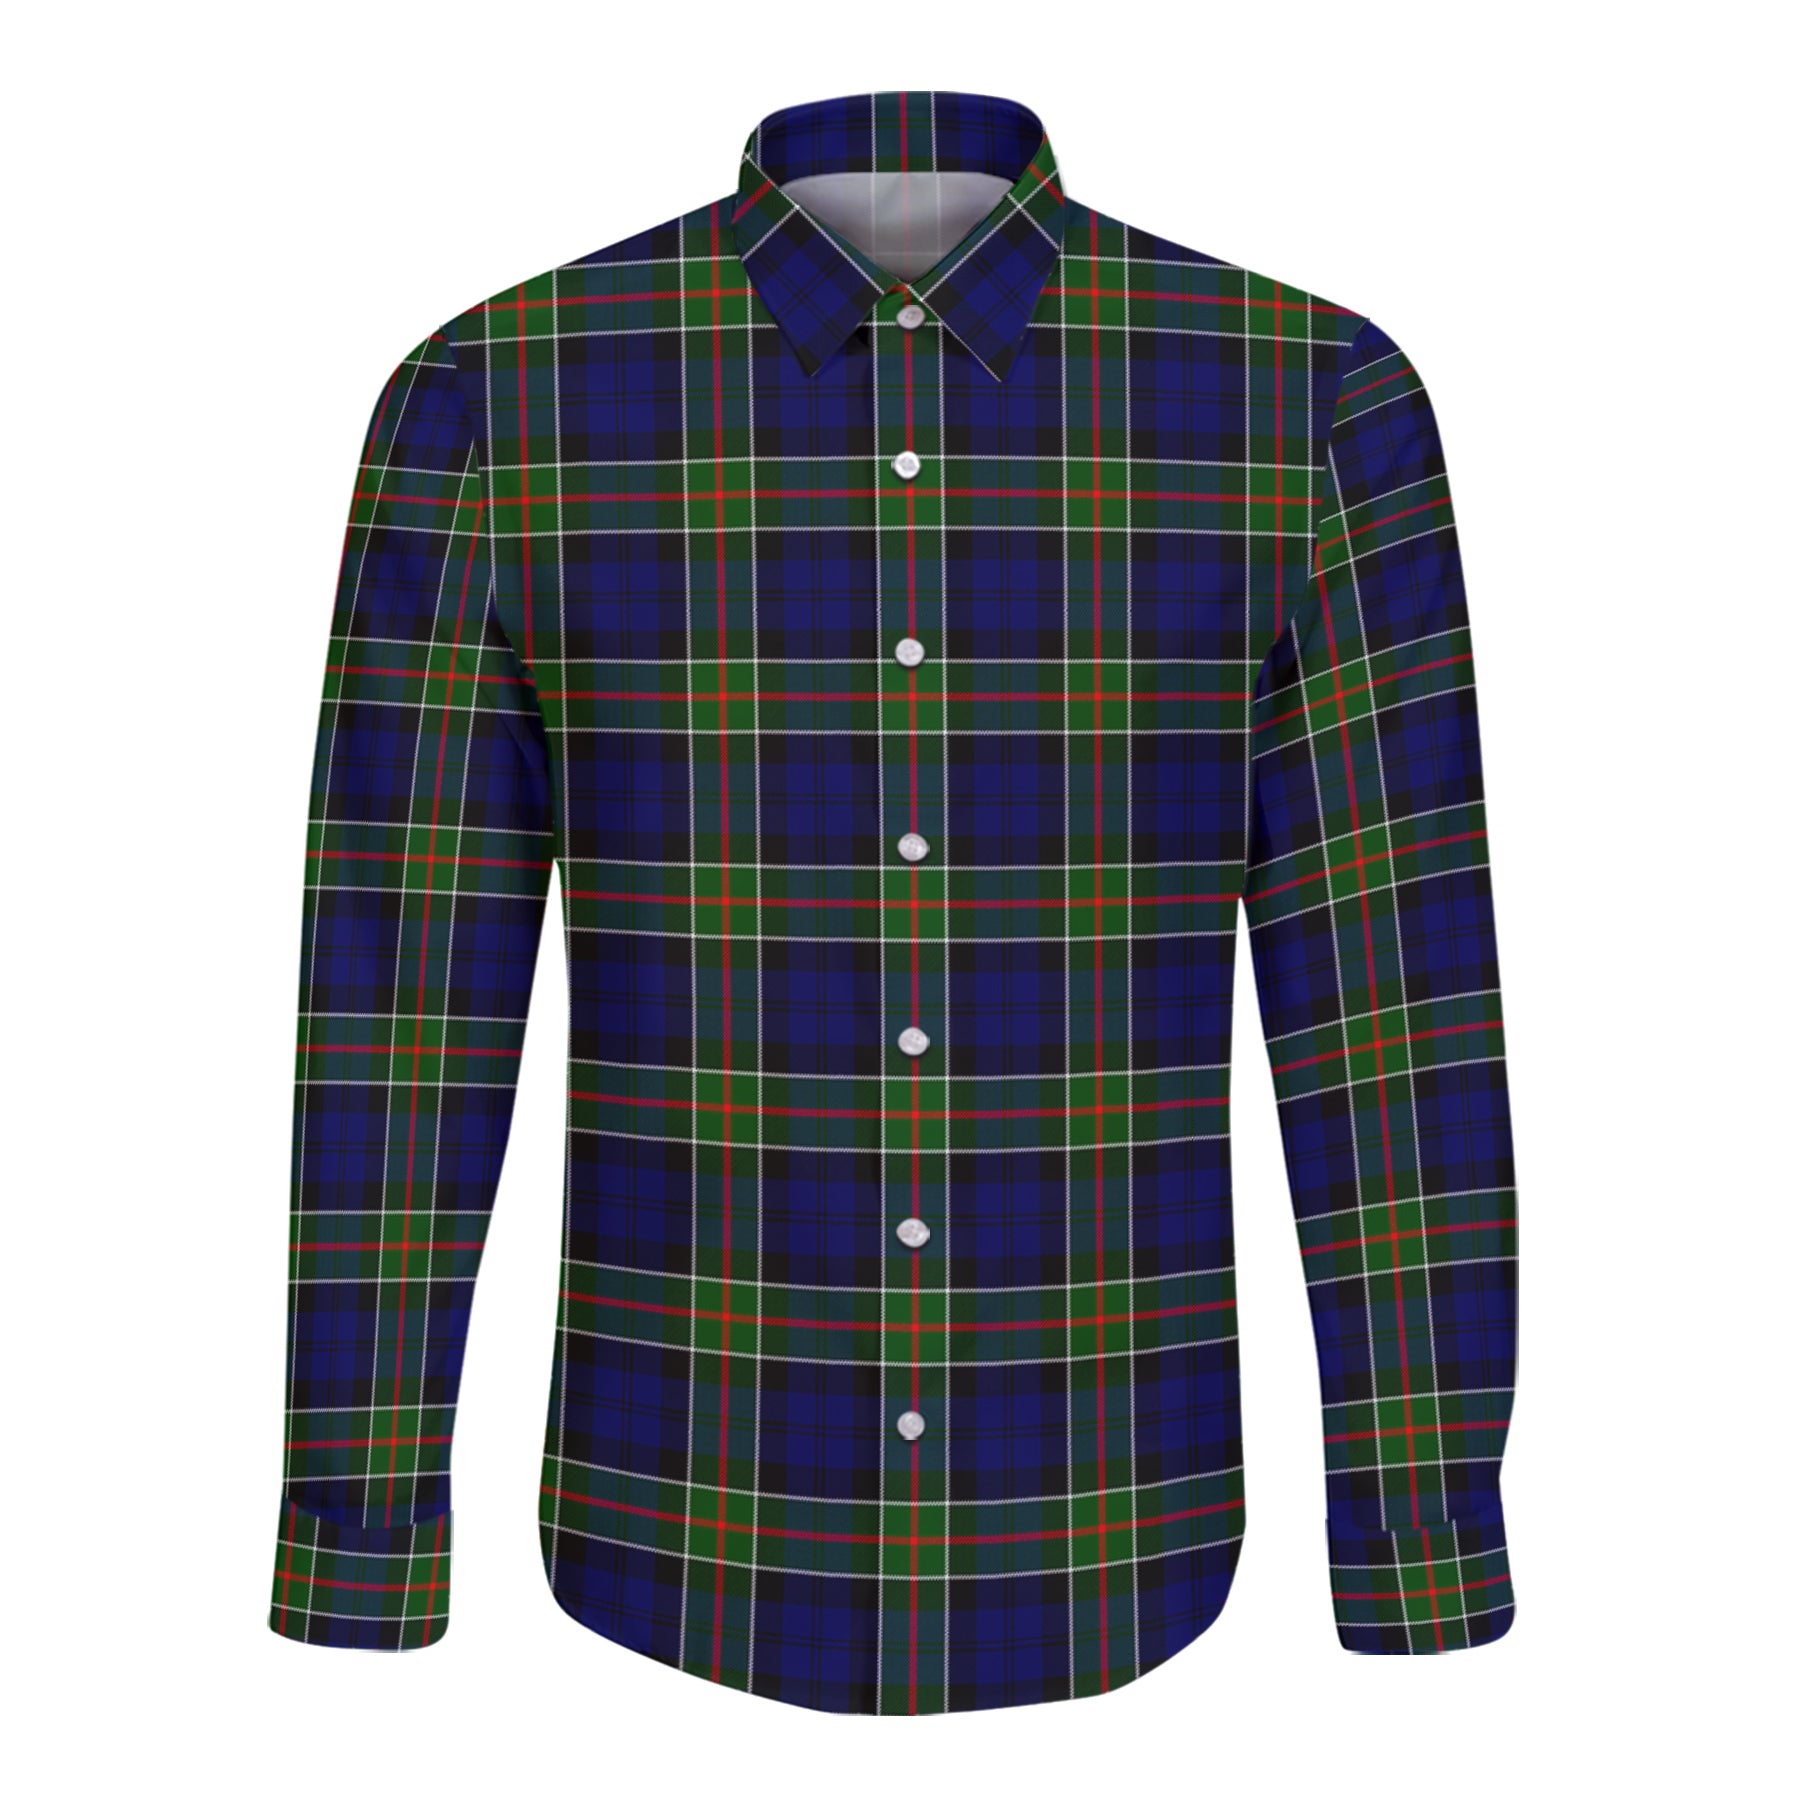 Colquhoun Modern Tartan Long Sleeve Button Up Shirt K23